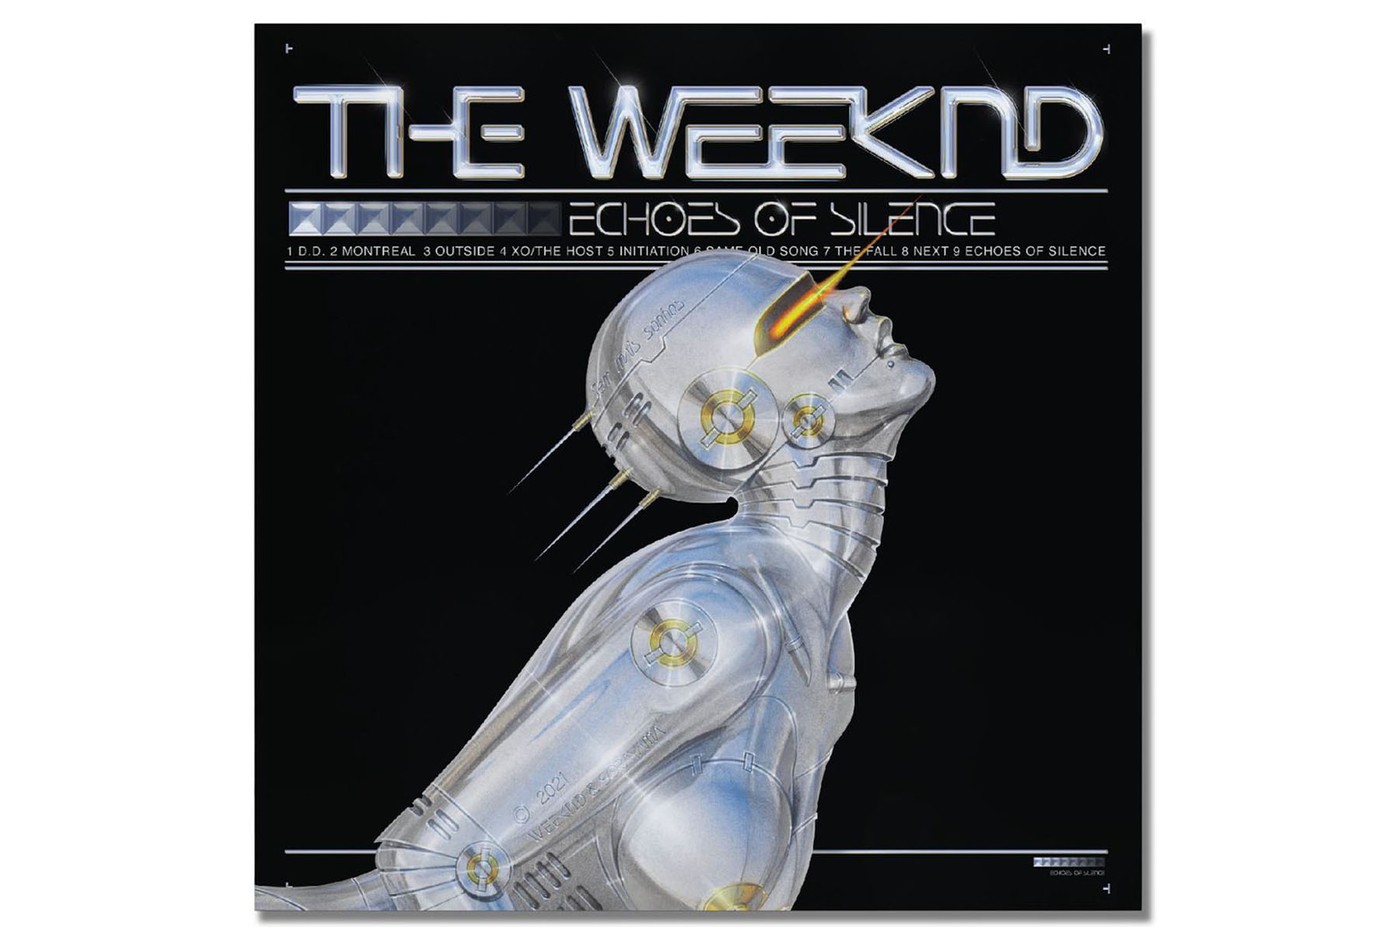 保留 2011 年 12 月 21 日發布《Echoes of Silence》排版設計並注入 Sexy Robot 為主體視覺